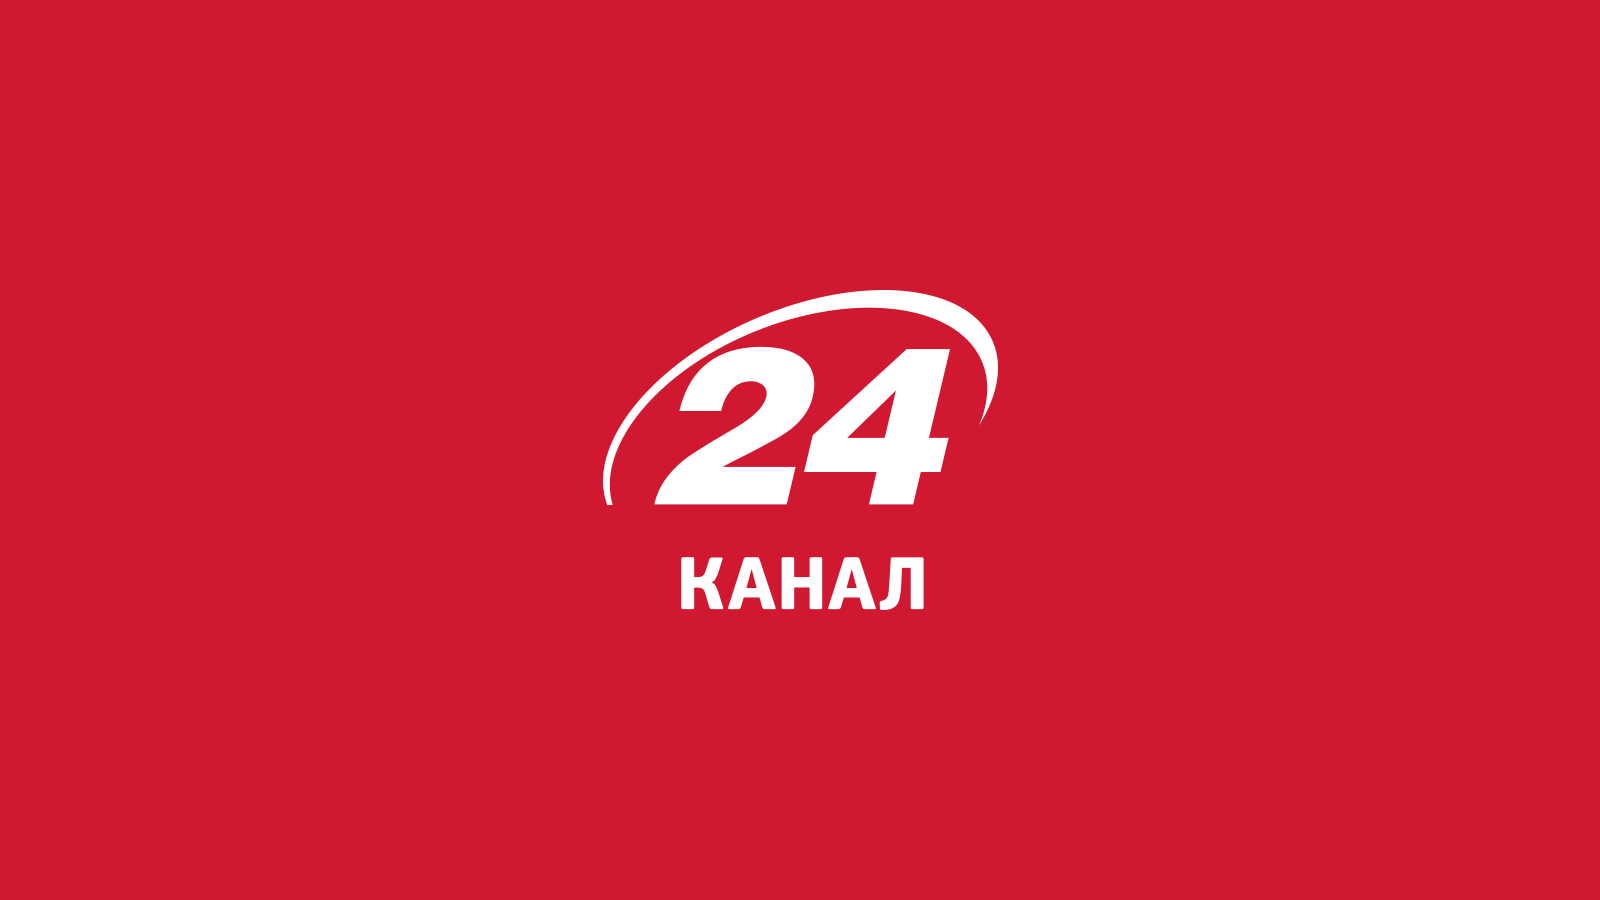 Луганські бойовики блокують сайт "24" та інші популярні українські ЗМІ